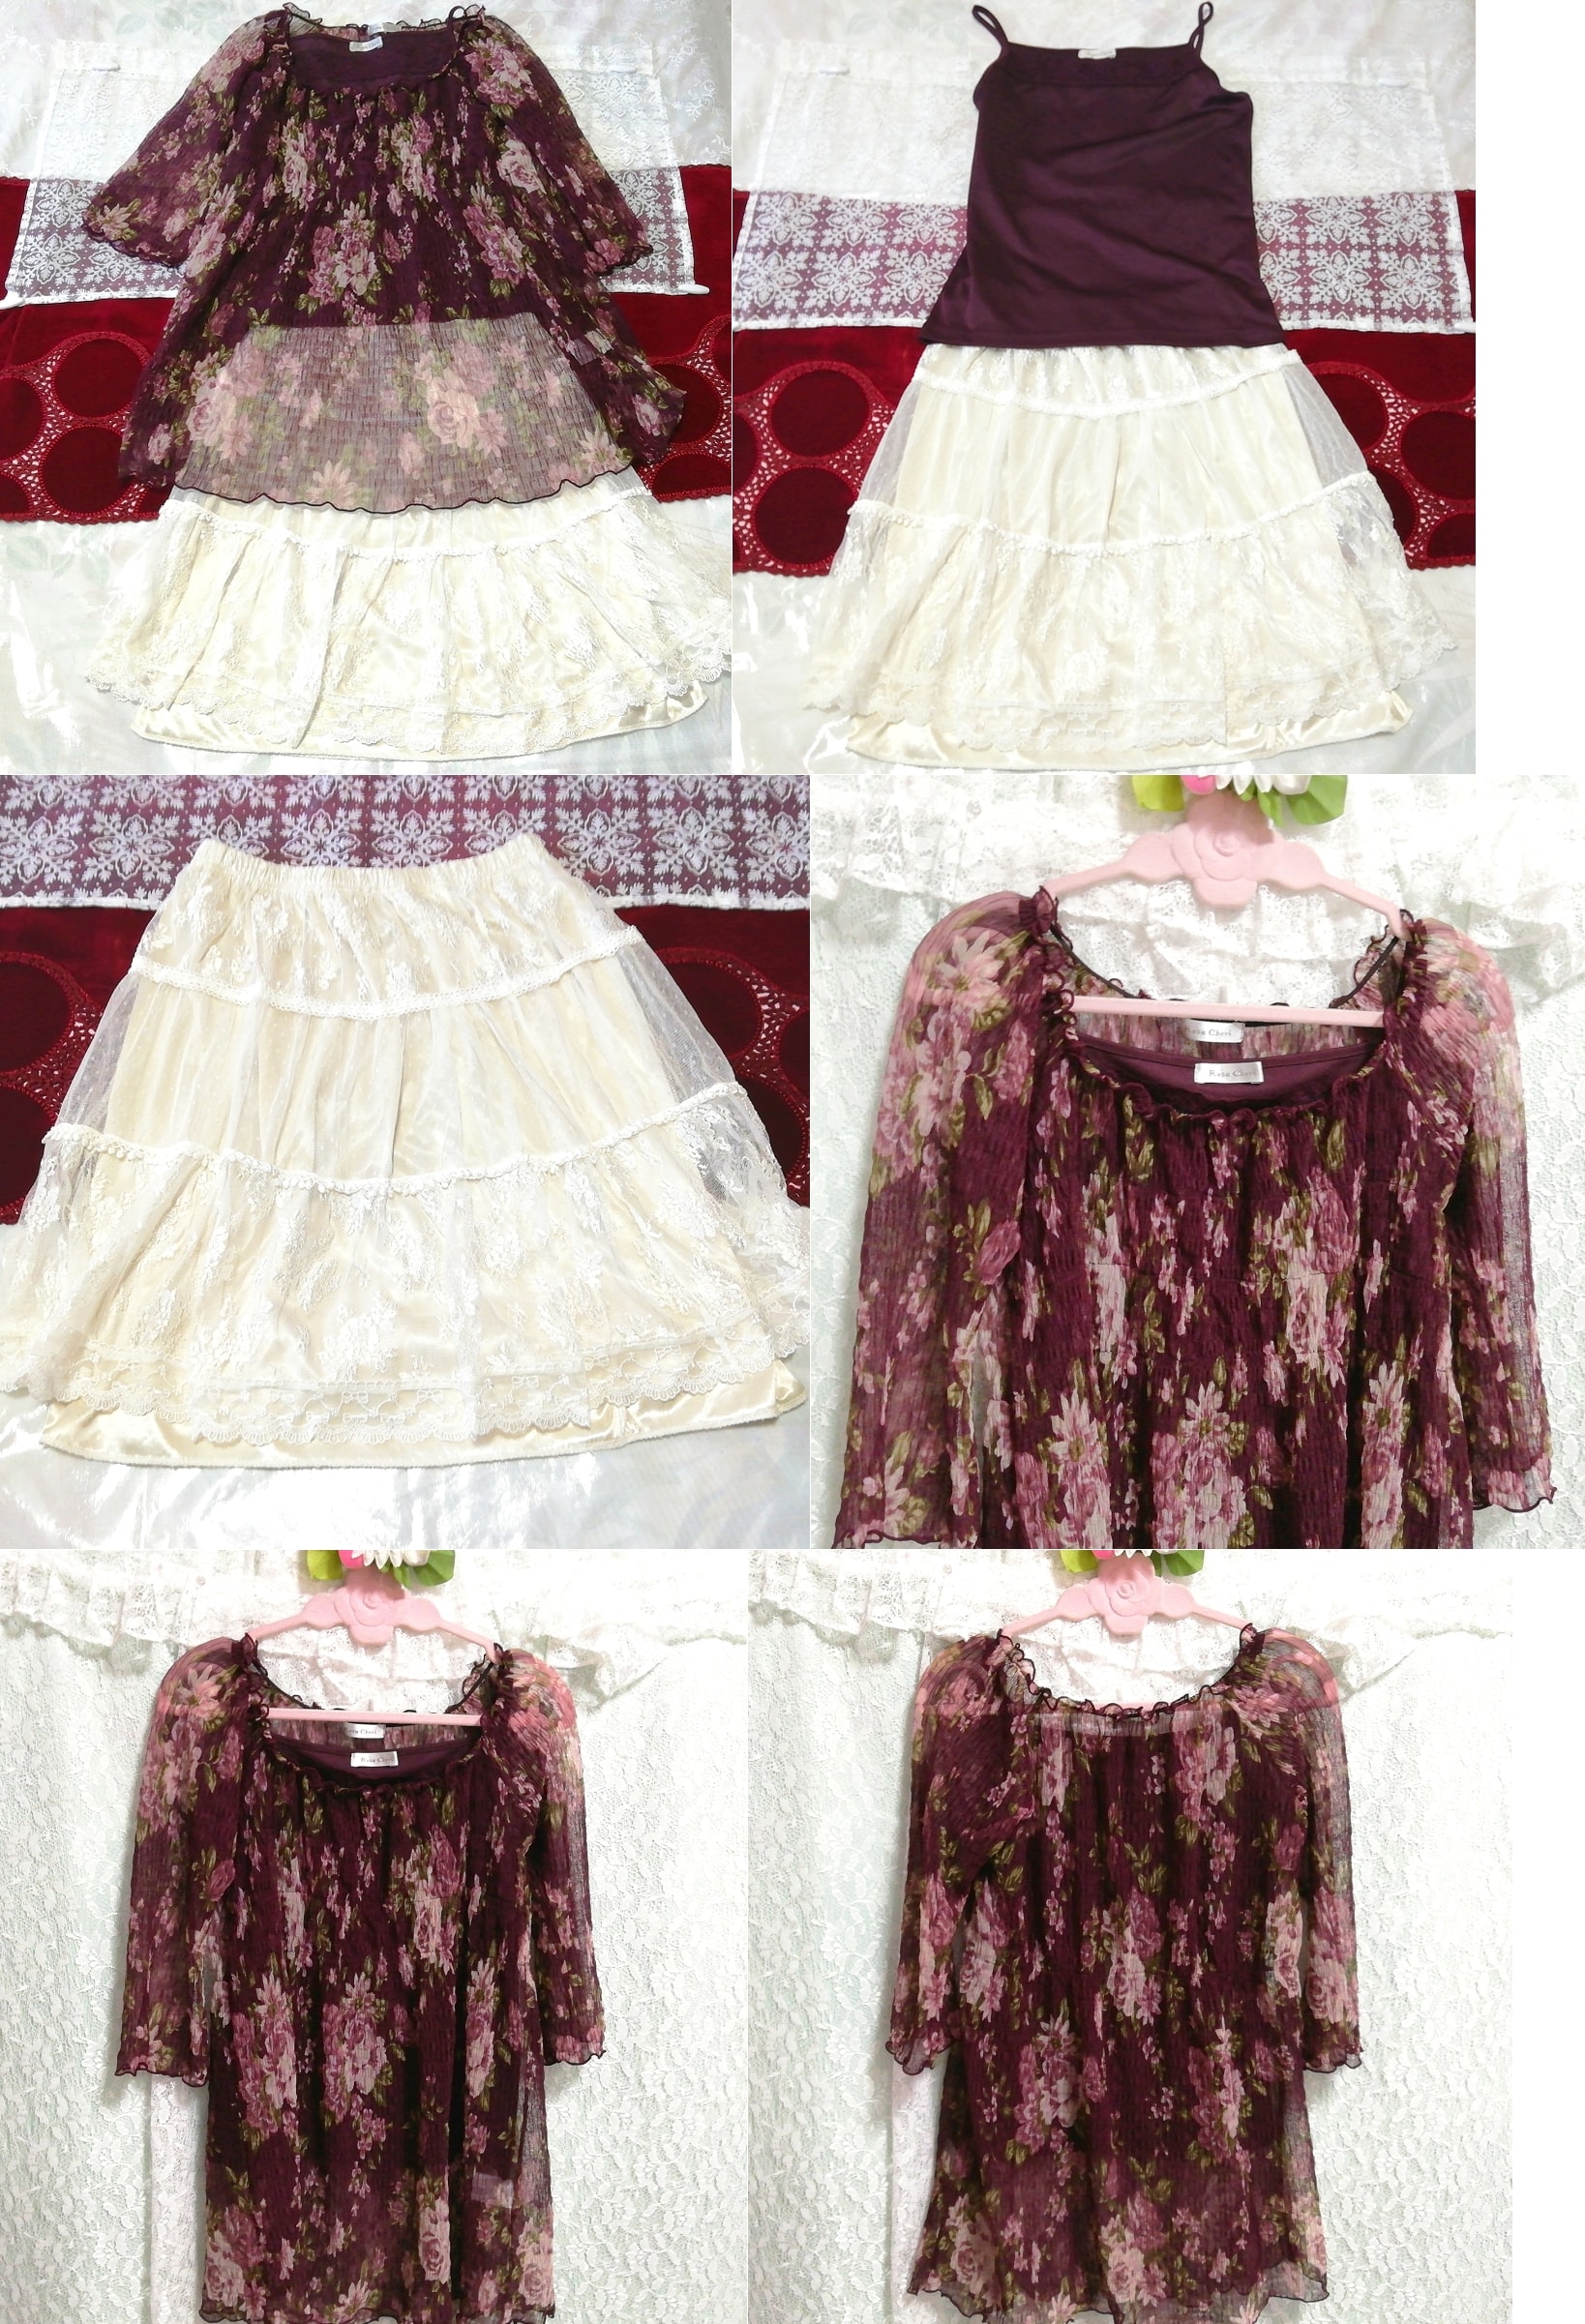 보라빛 꽃무늬 쉬폰 시스루 튜닉 캐미솔 네글리제 나이트가운 화이트 스커트 2P, 패션, 숙녀 패션, 잠옷, 잠옷